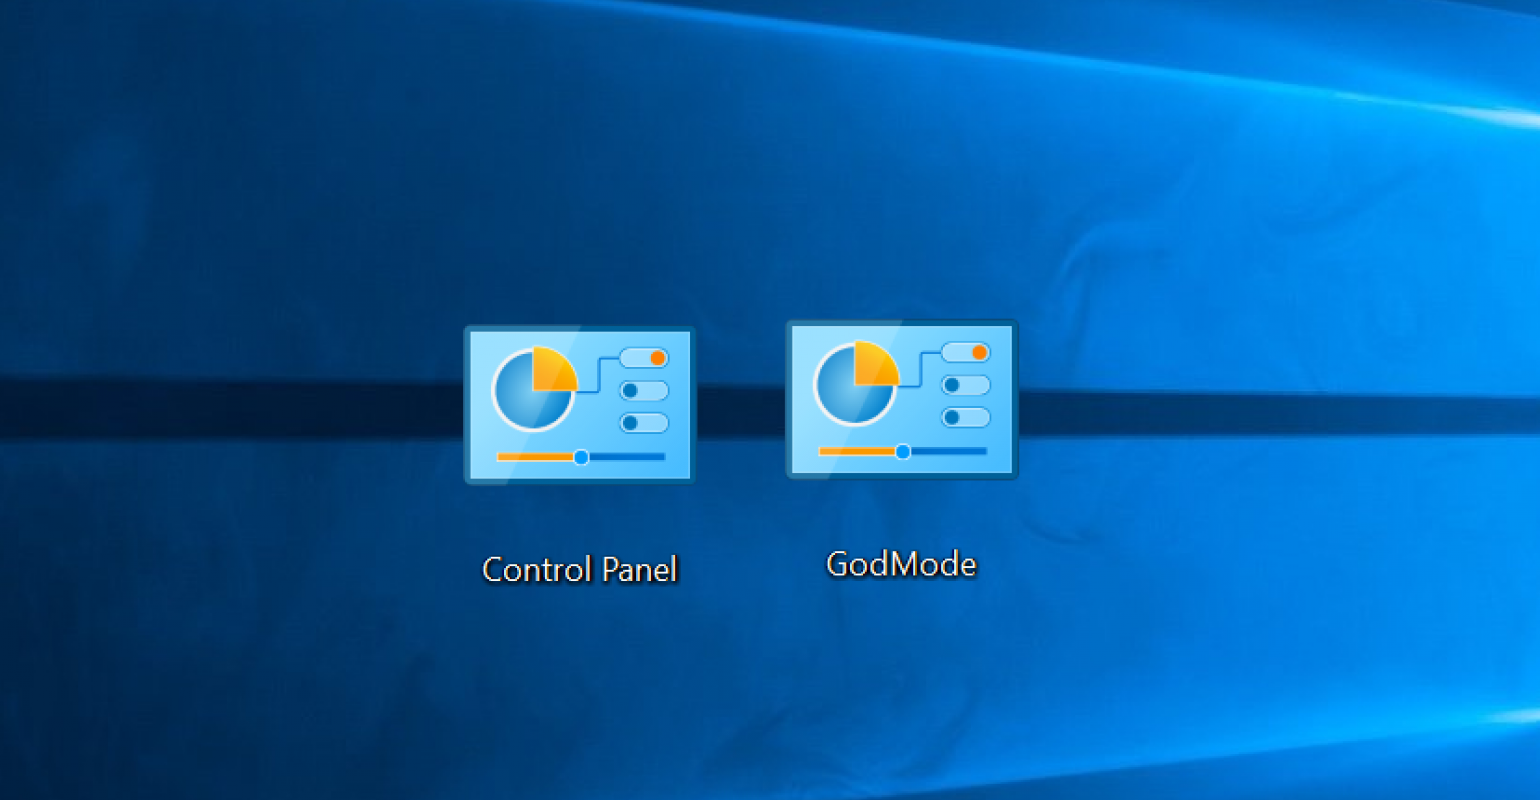 Как включить режим бога в Windows 10: два простых способа